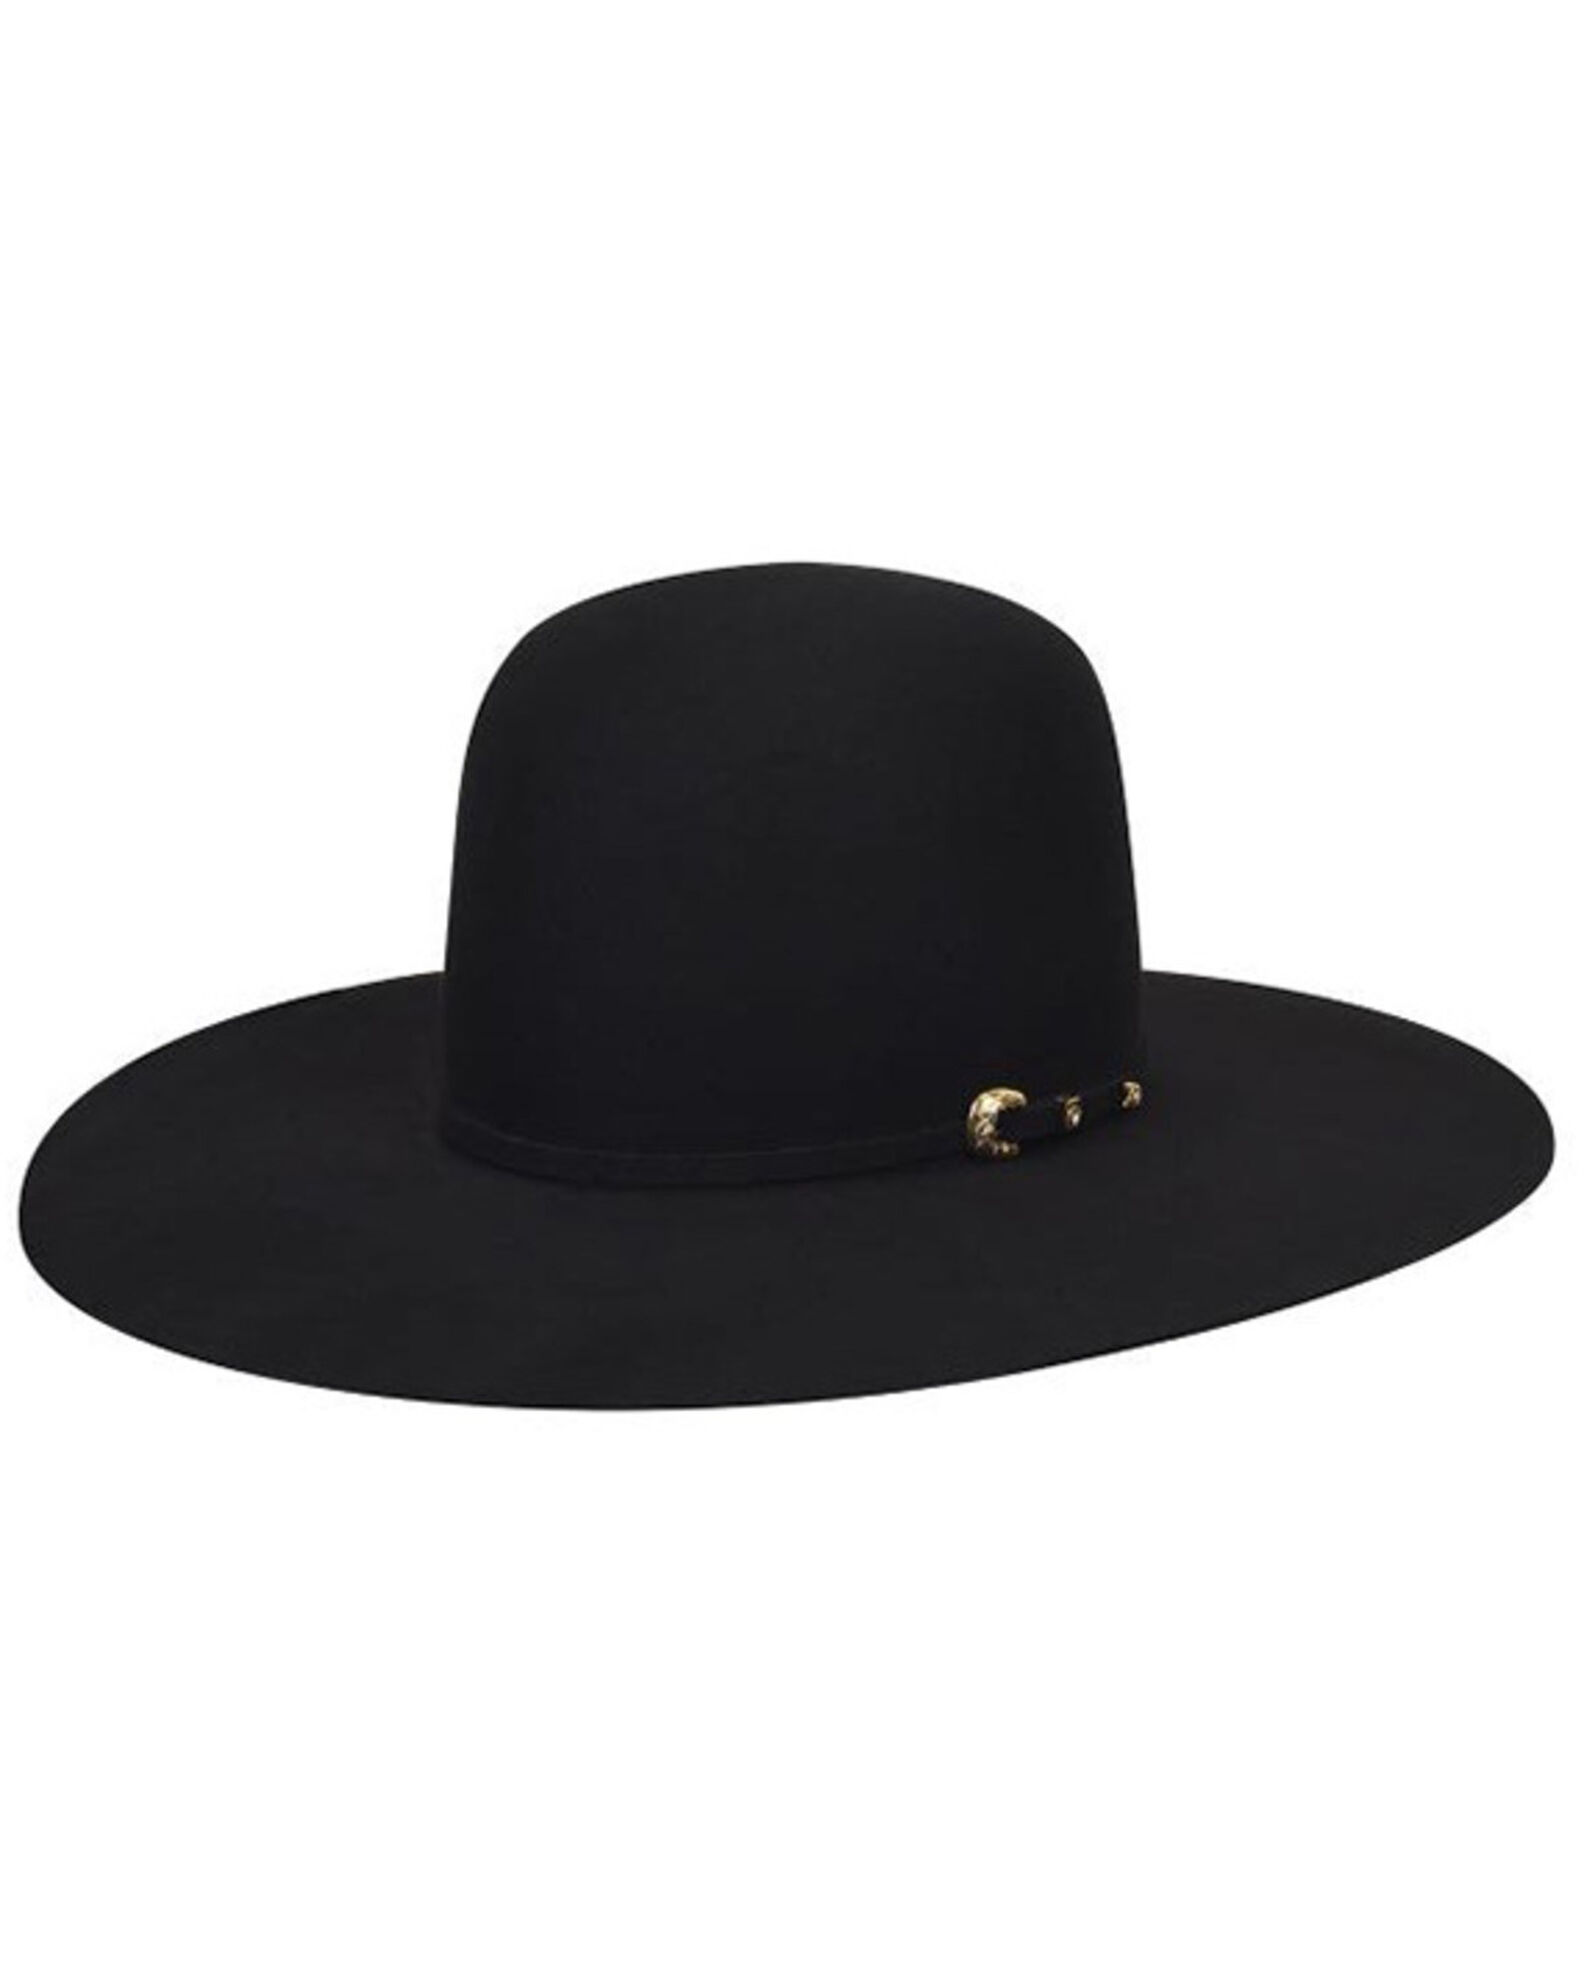 Landry BAILEY Black Wool Felt Cowboy Hat